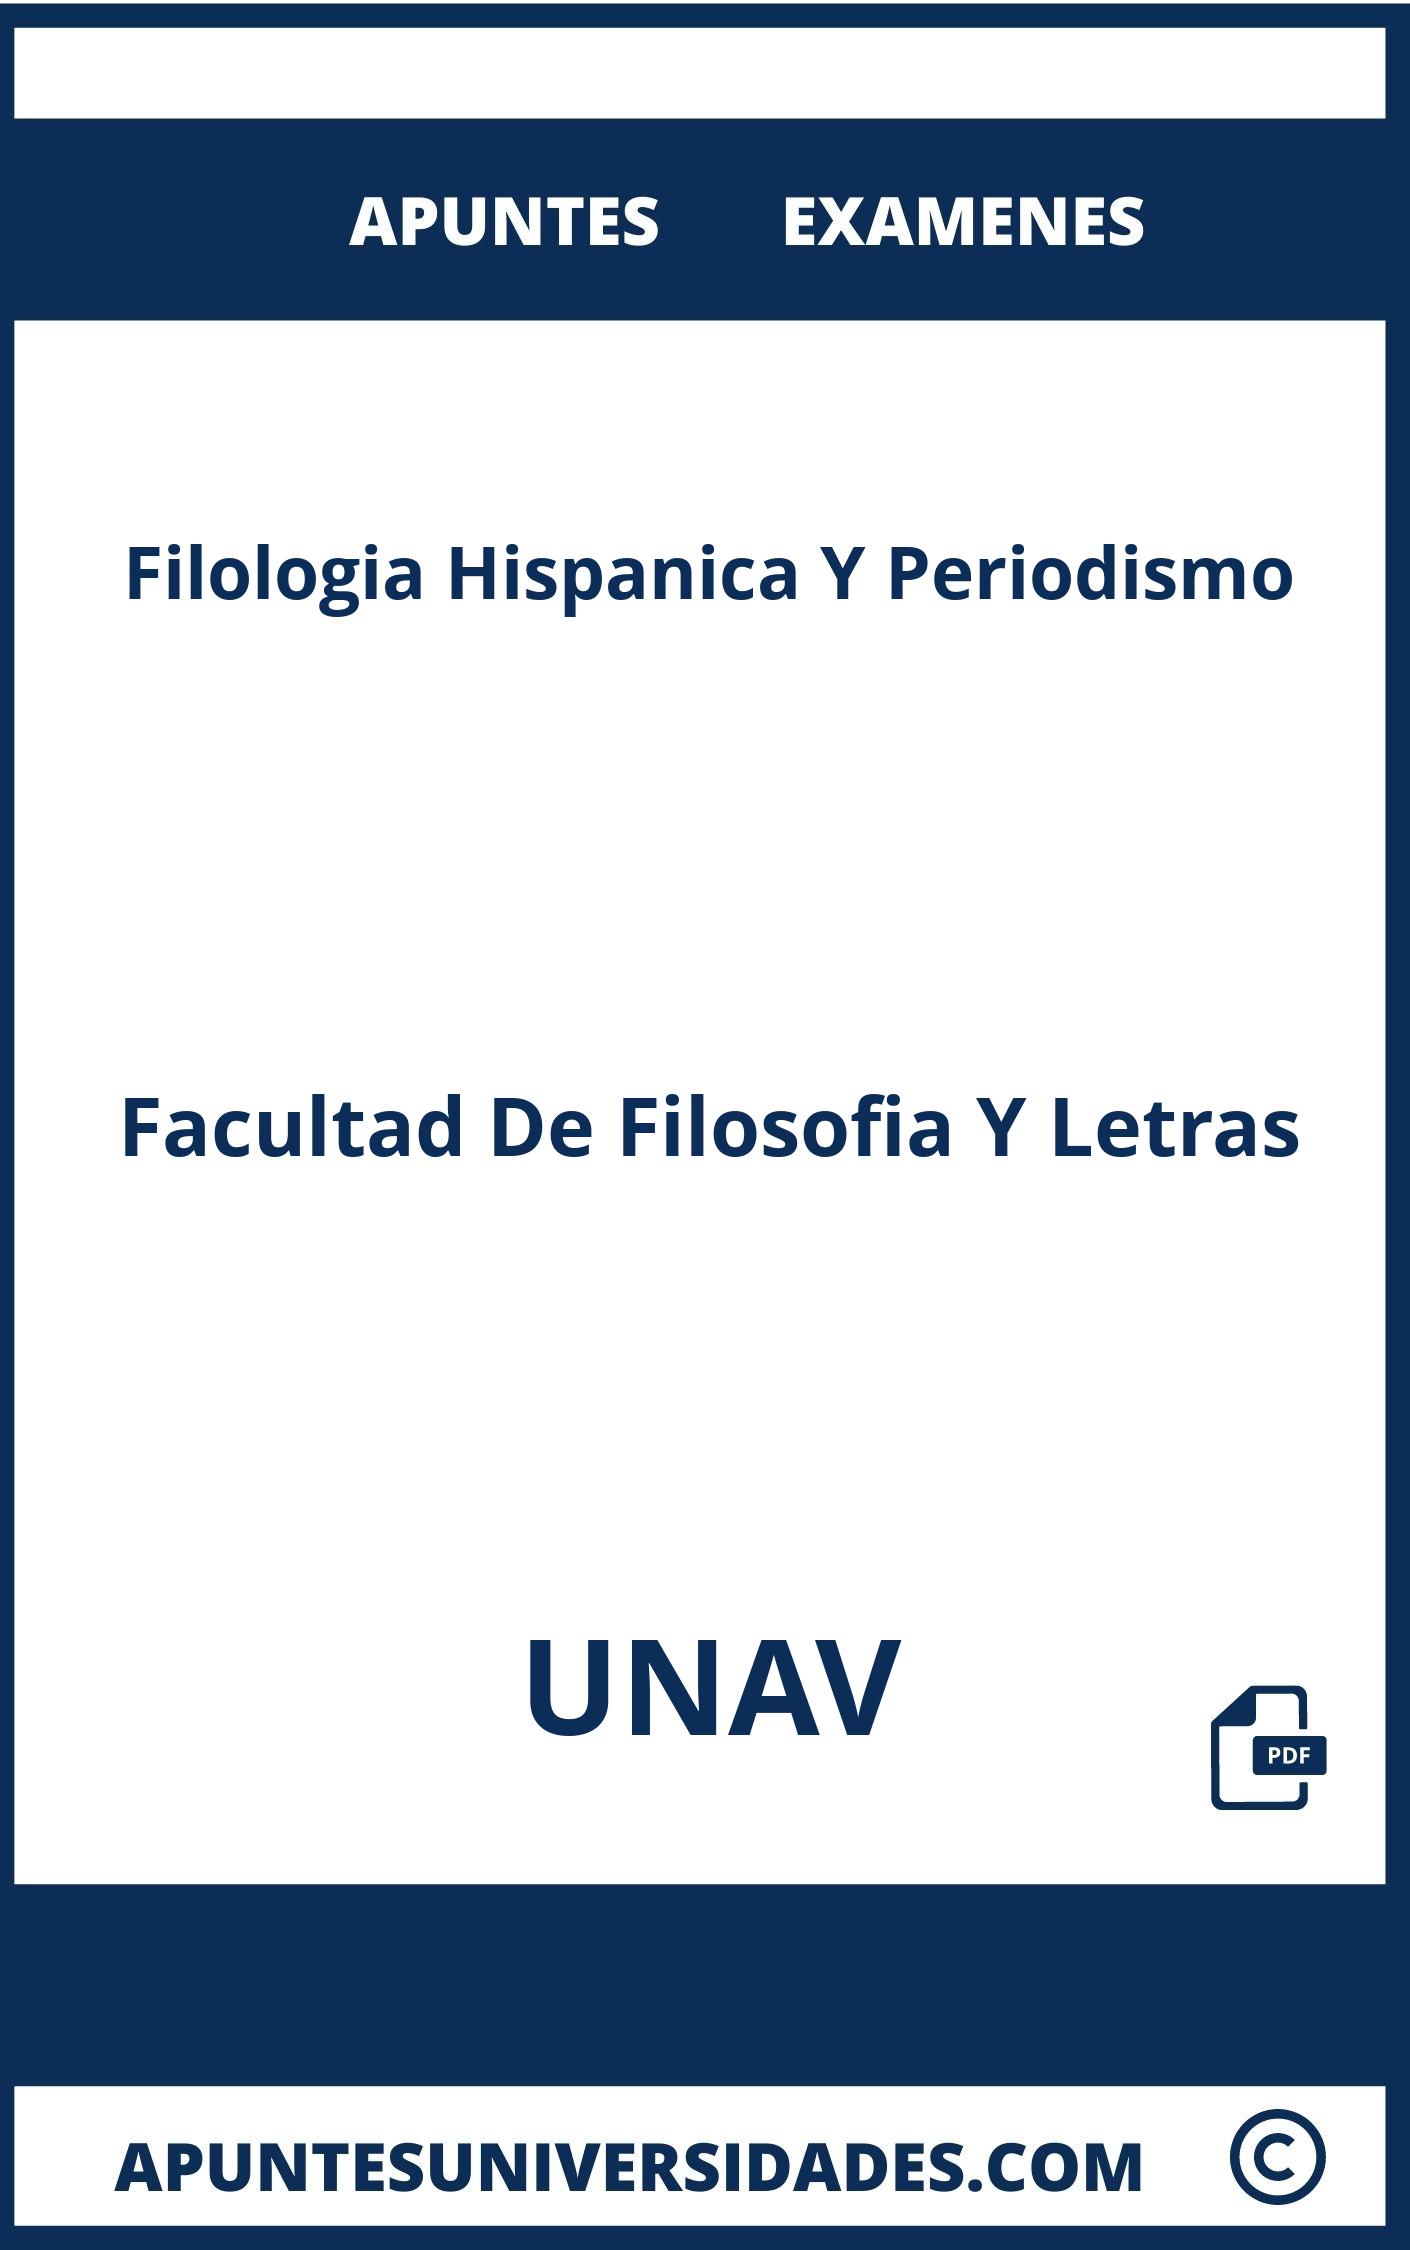 Examenes y Apuntes Filologia Hispanica Y Periodismo UNAV